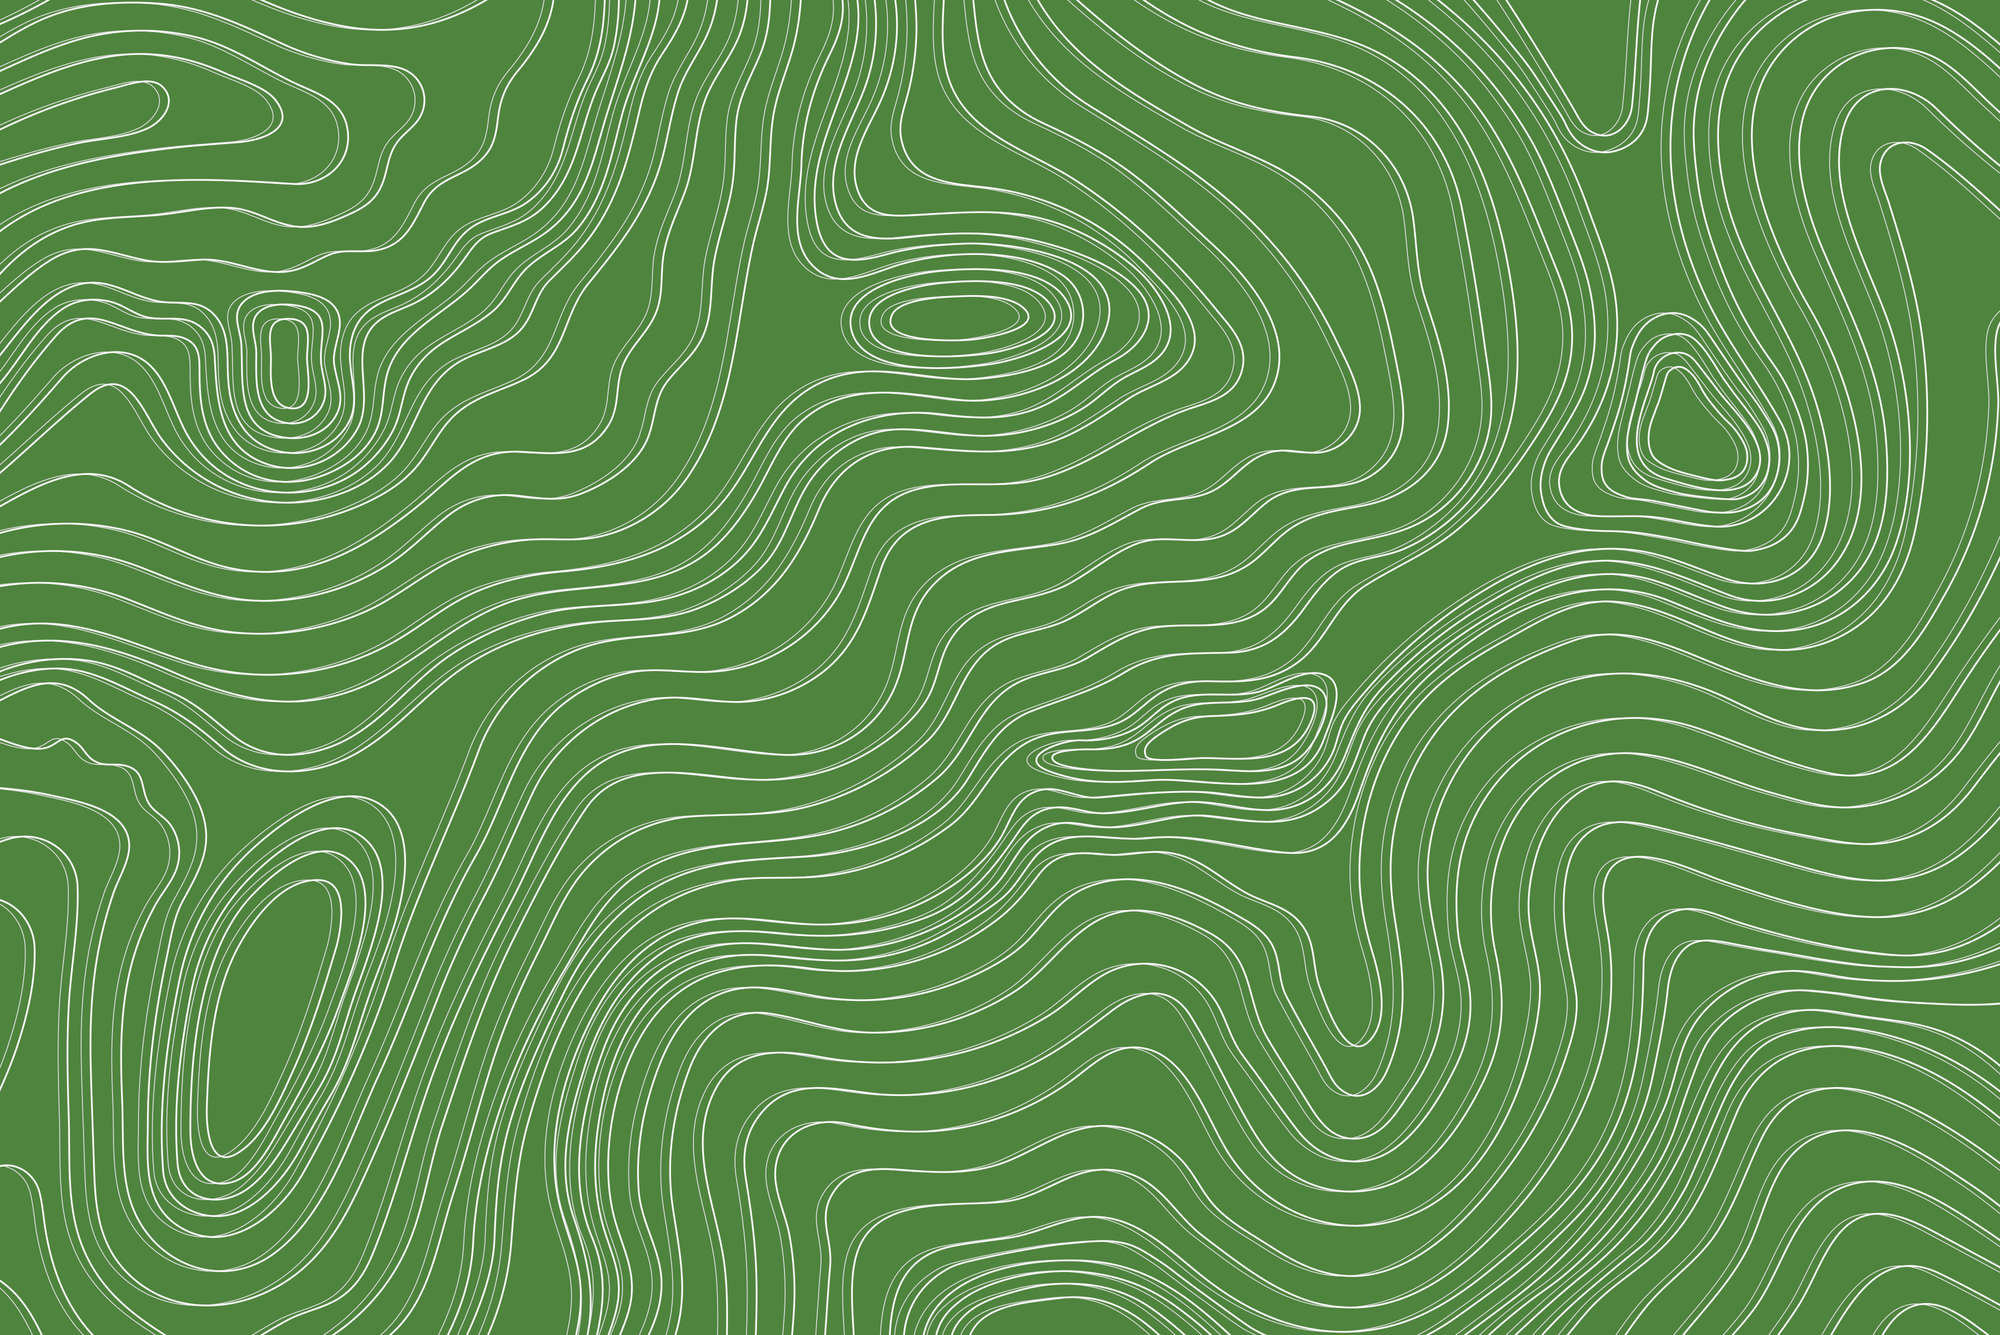             Papel pintado con diseño de ondas y círculos en color verde sobre vellón liso nacarado
        